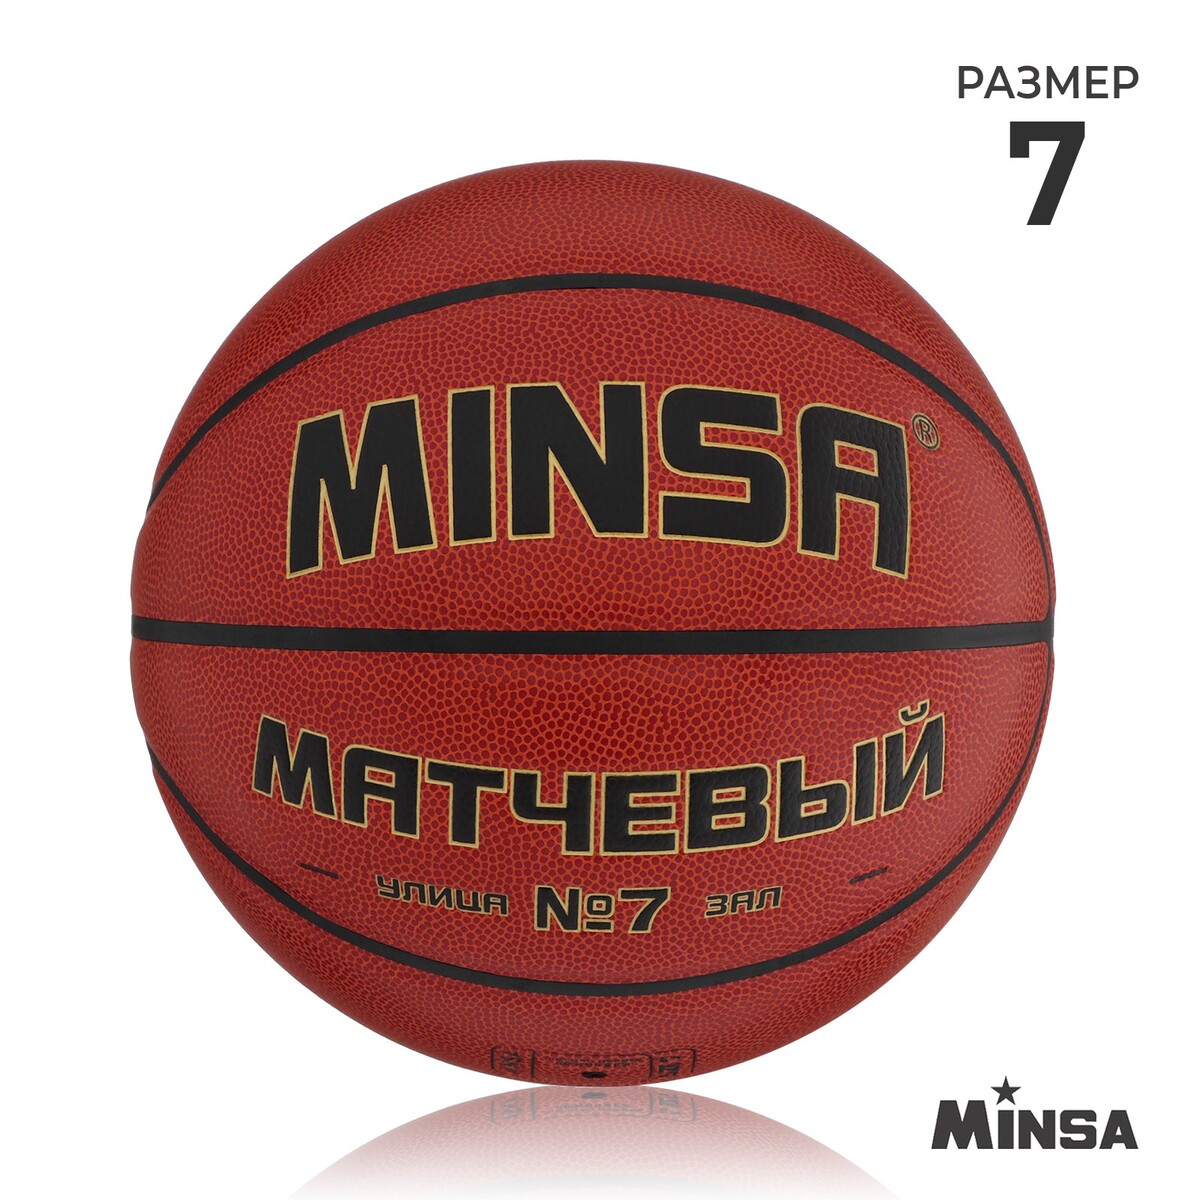 Баскетбольный мяч minsa, матчевый, microfiber pu, клееный, 8 панелей, р. 7 баскетбольный мяч minsa матчевый microfiber pu клееный 8 панелей р 6